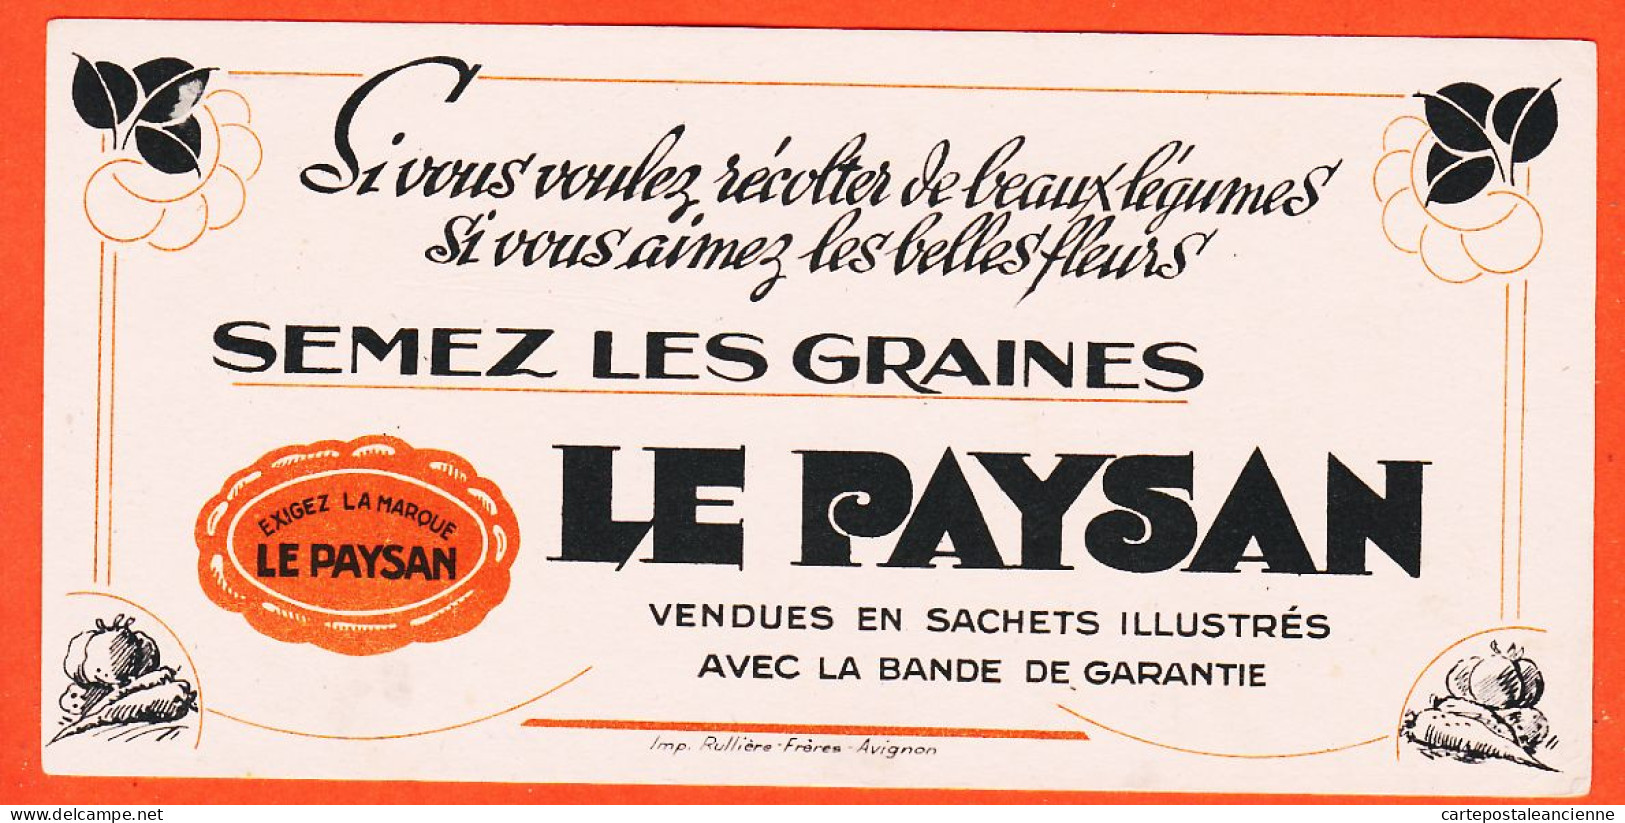 06247 / Exigez La Marque LE PAYSAN Semez Les Graines Imprimerie RULLIERE Avignon Buvard  Dim 20x9.8 - Agricoltura